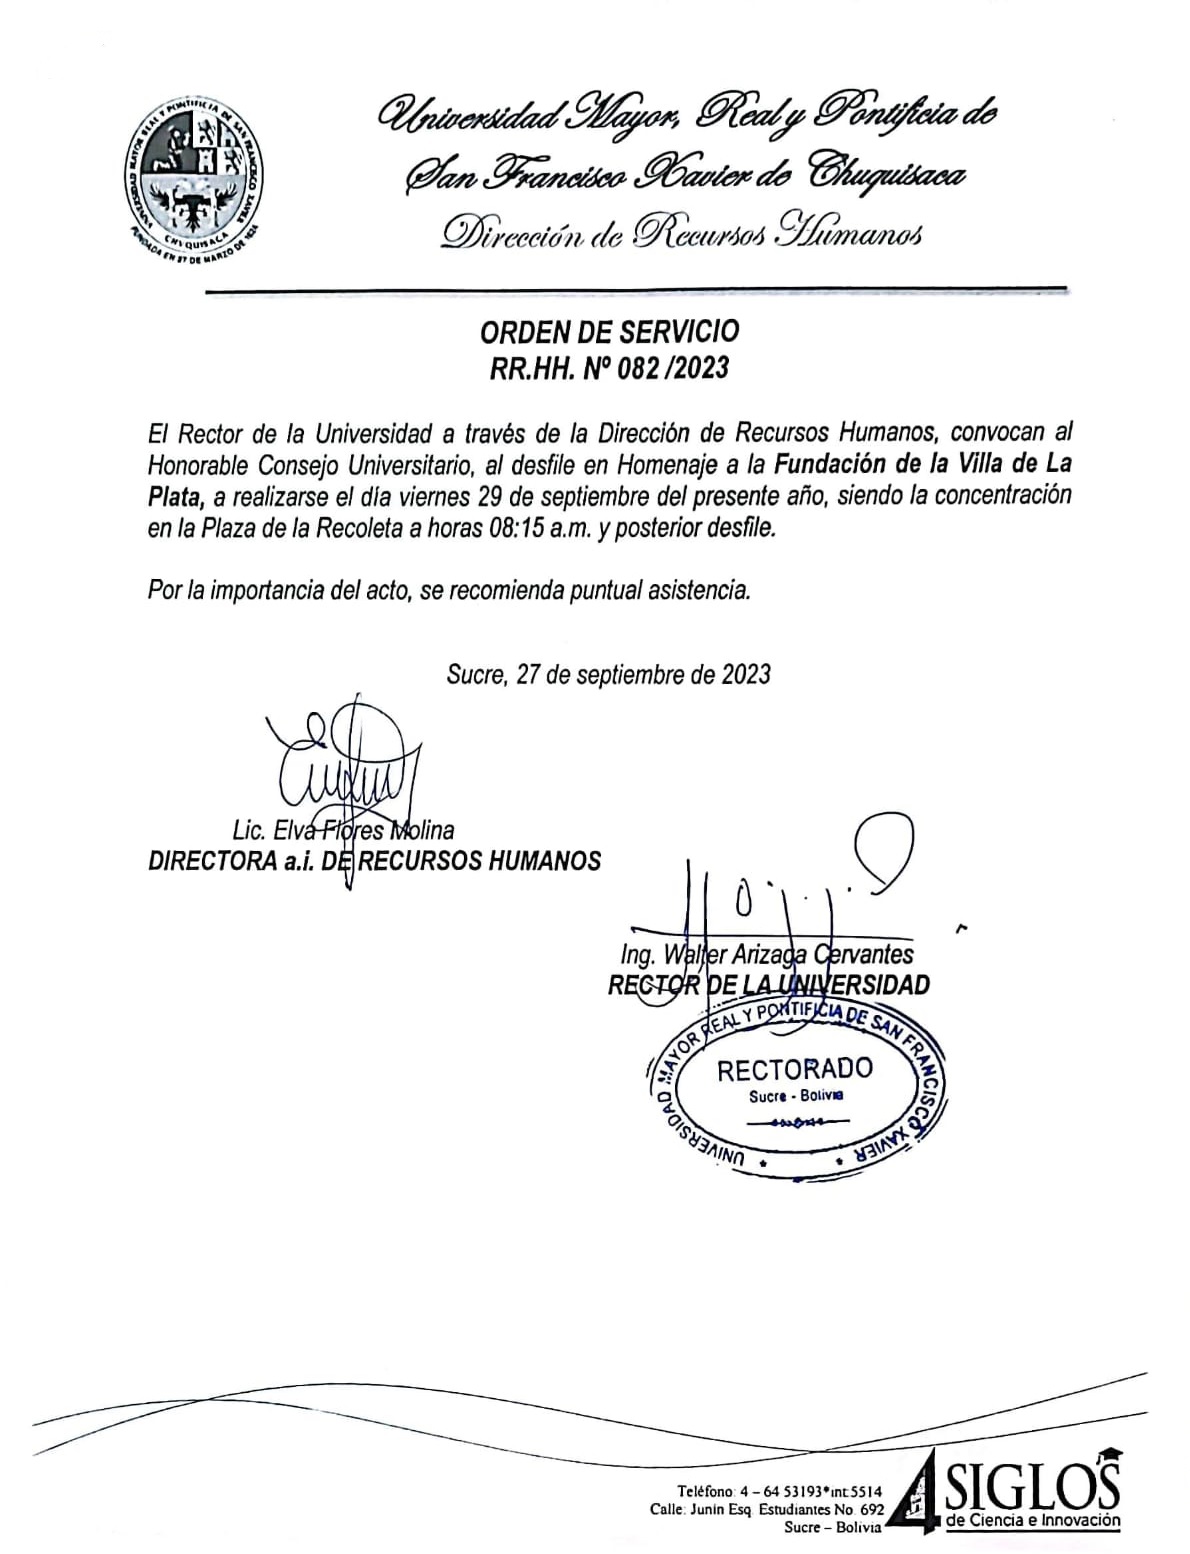 ORDEN DE SERVICIO RR.HH. Nº 082/2023, HOMENAJE FUNDACIÓN DE LA VILLA DE LA PLATA.